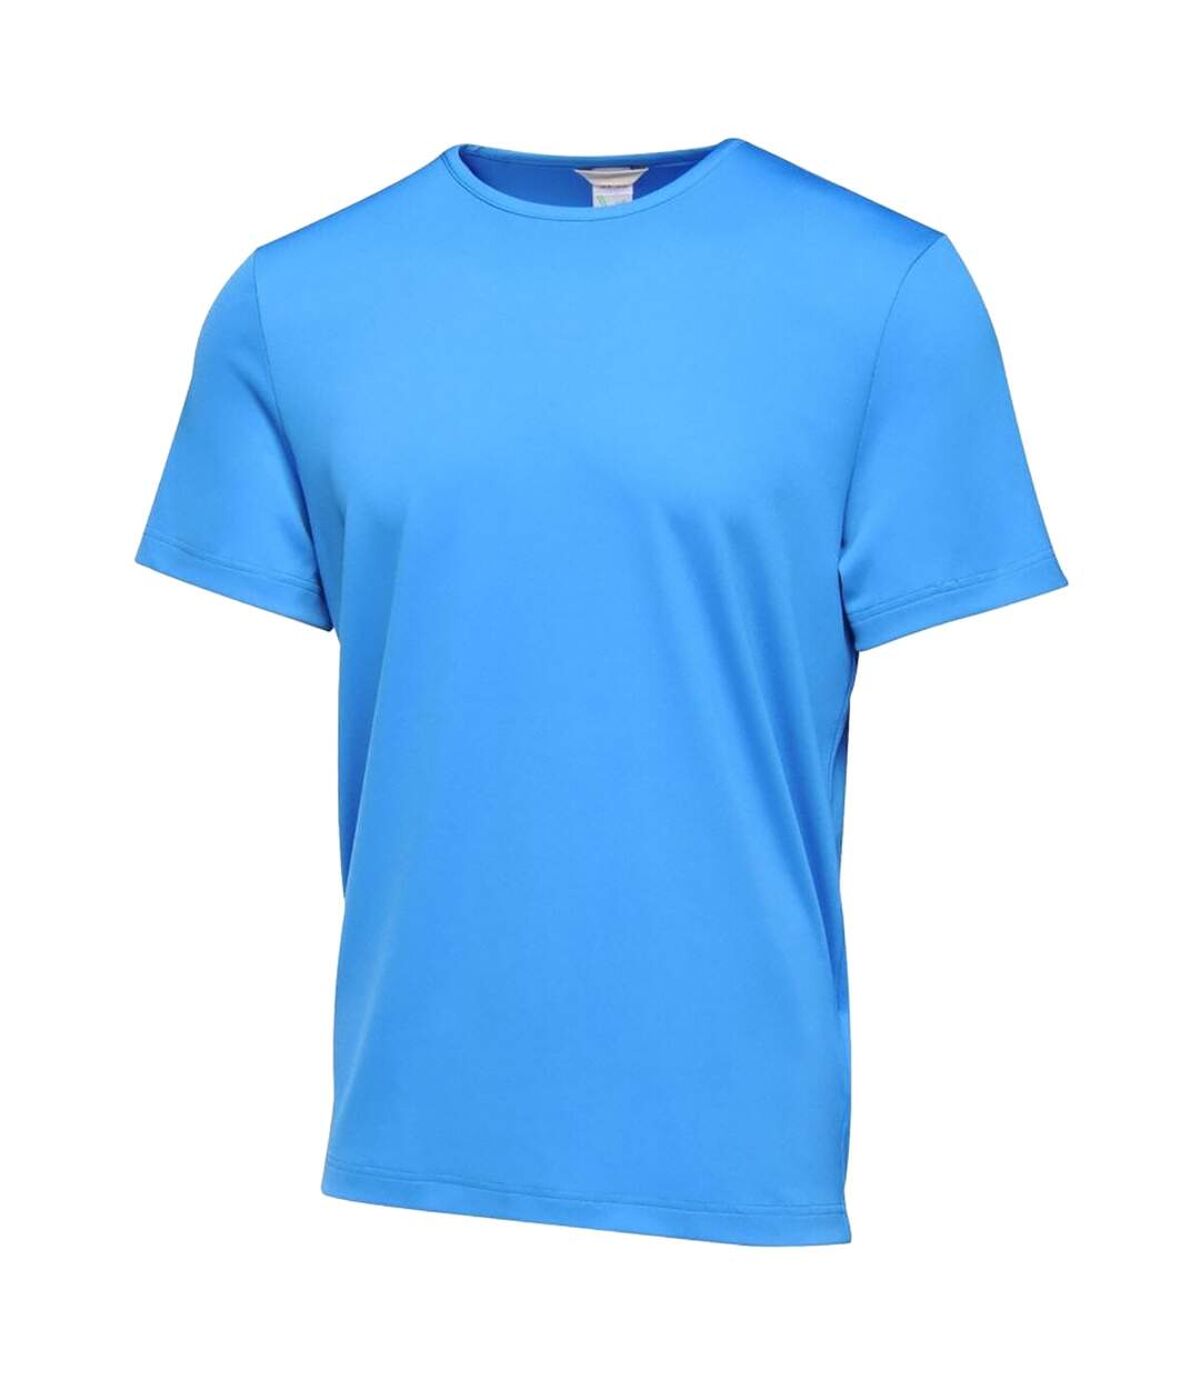 Regatta - T-shirt TORINO - Hommes (Bleu ciel) - UTRG4091